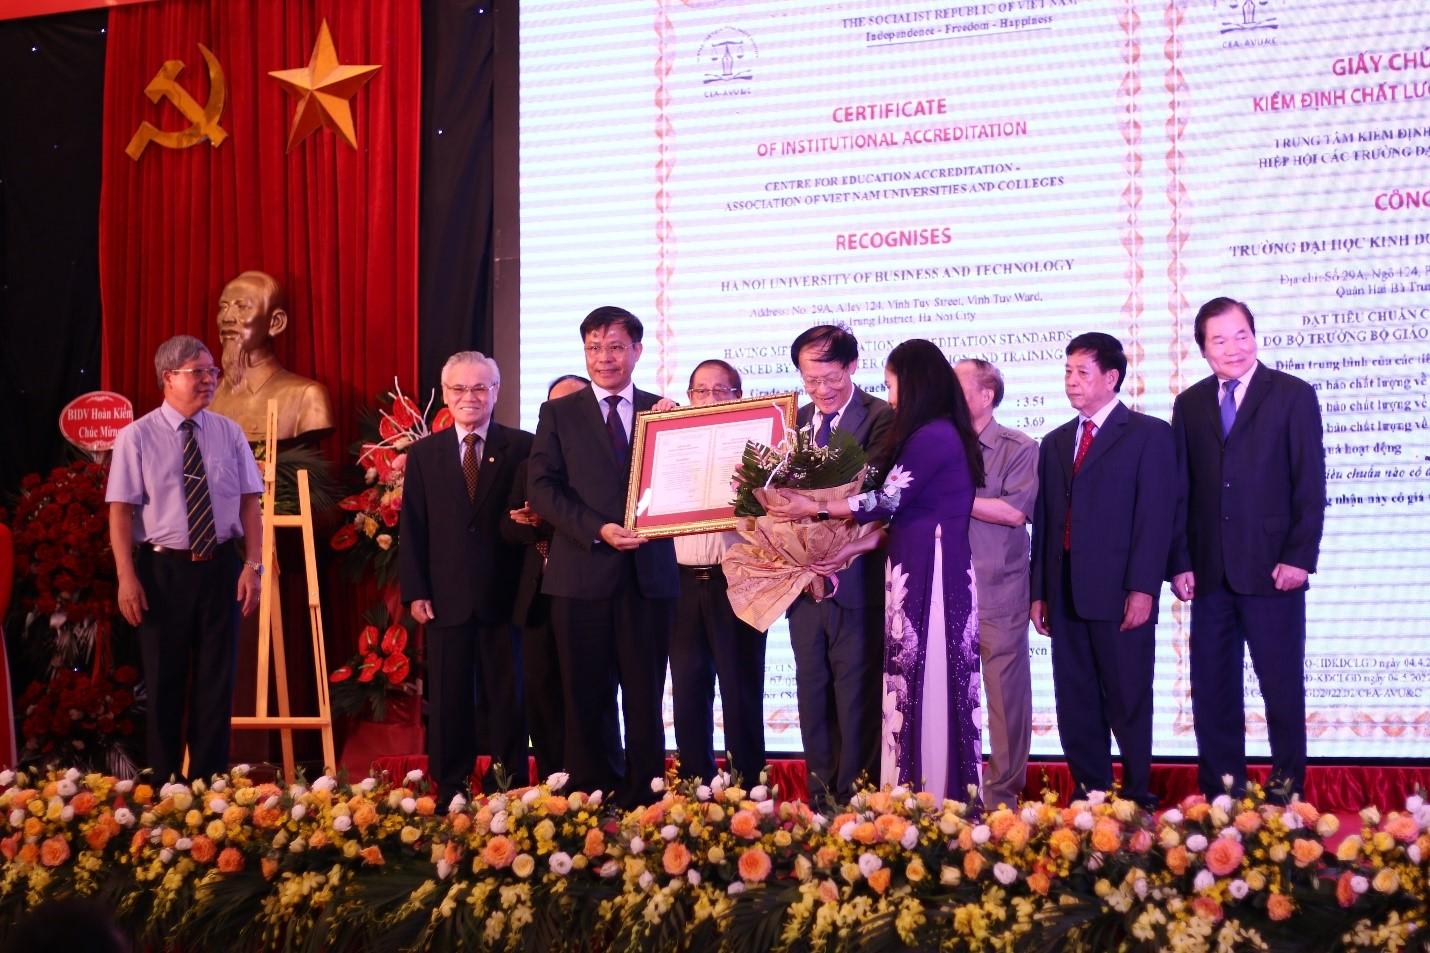 Trường ĐH Kinh doanh và Công nghệ Hà Nội đạt chuẩn kiểm định chất lượng giáo dục - Giáo dục Việt Nam